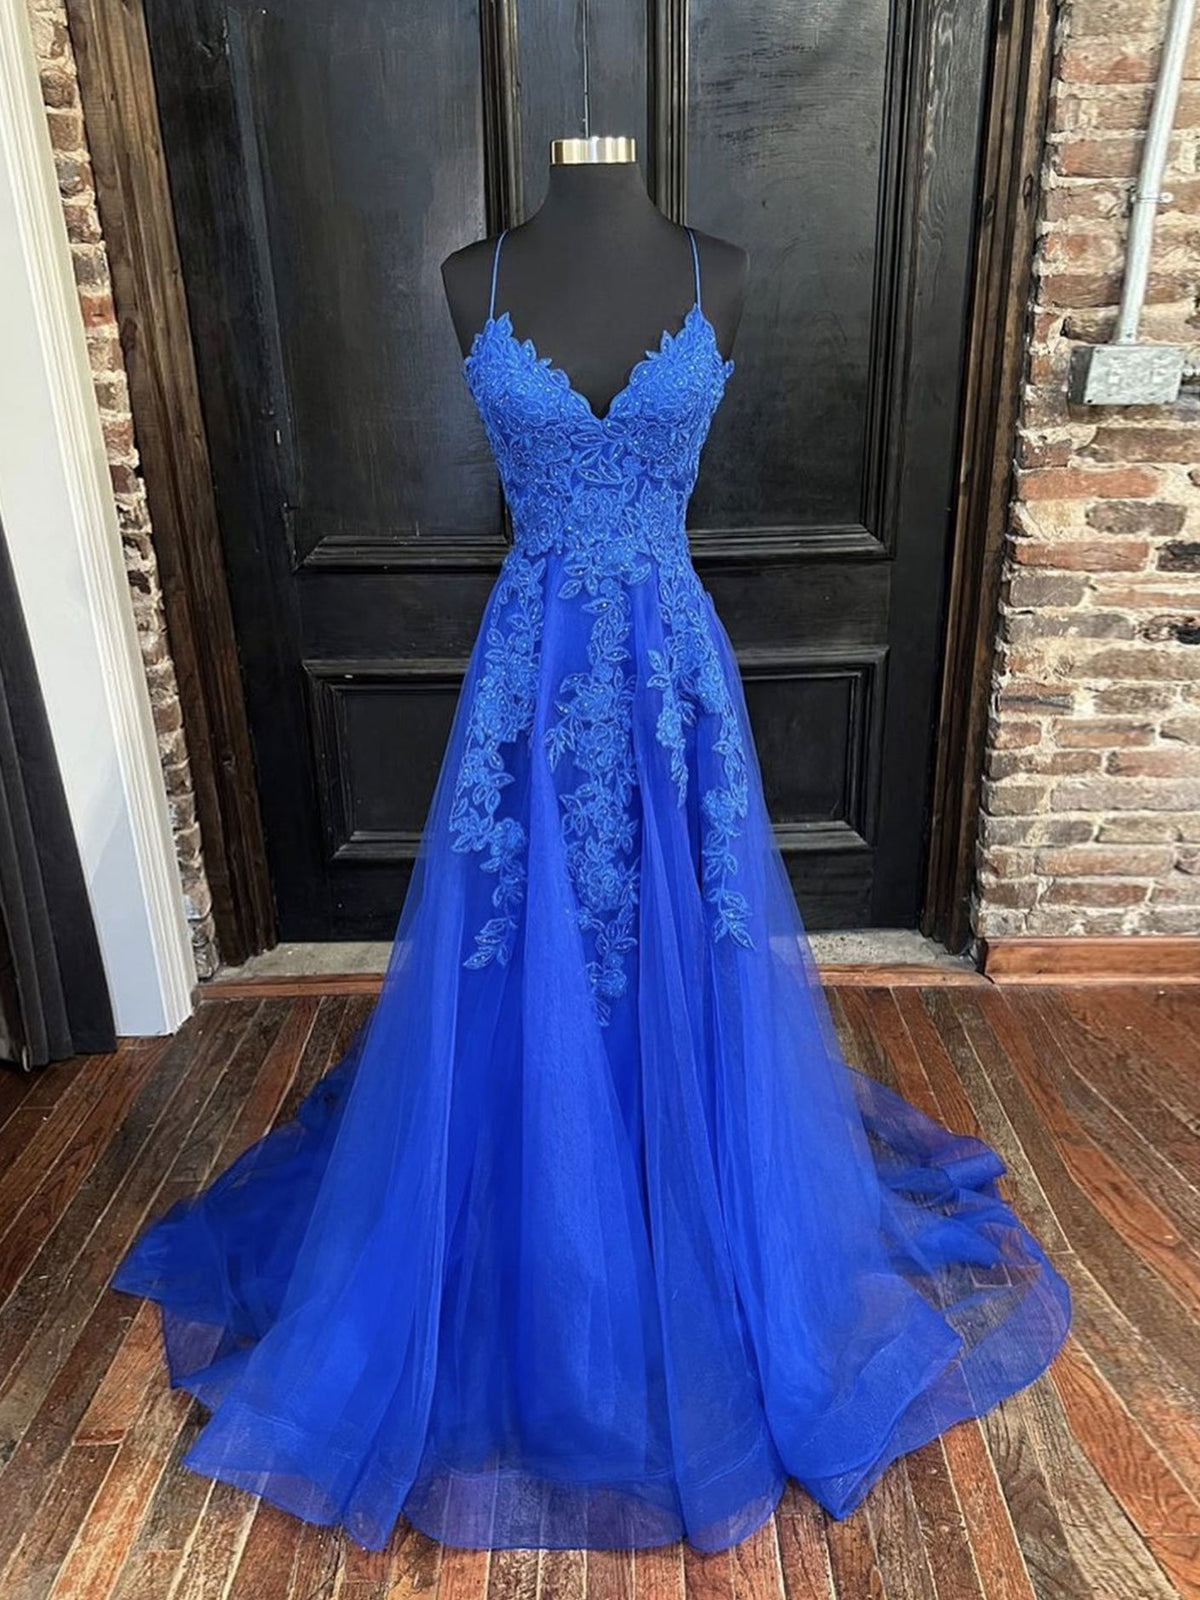 Formal Dresses For Teens, A Line V Neck Royal Blue Lace Prom Dresses, Royal Blue Lace Formal Evening Dresses